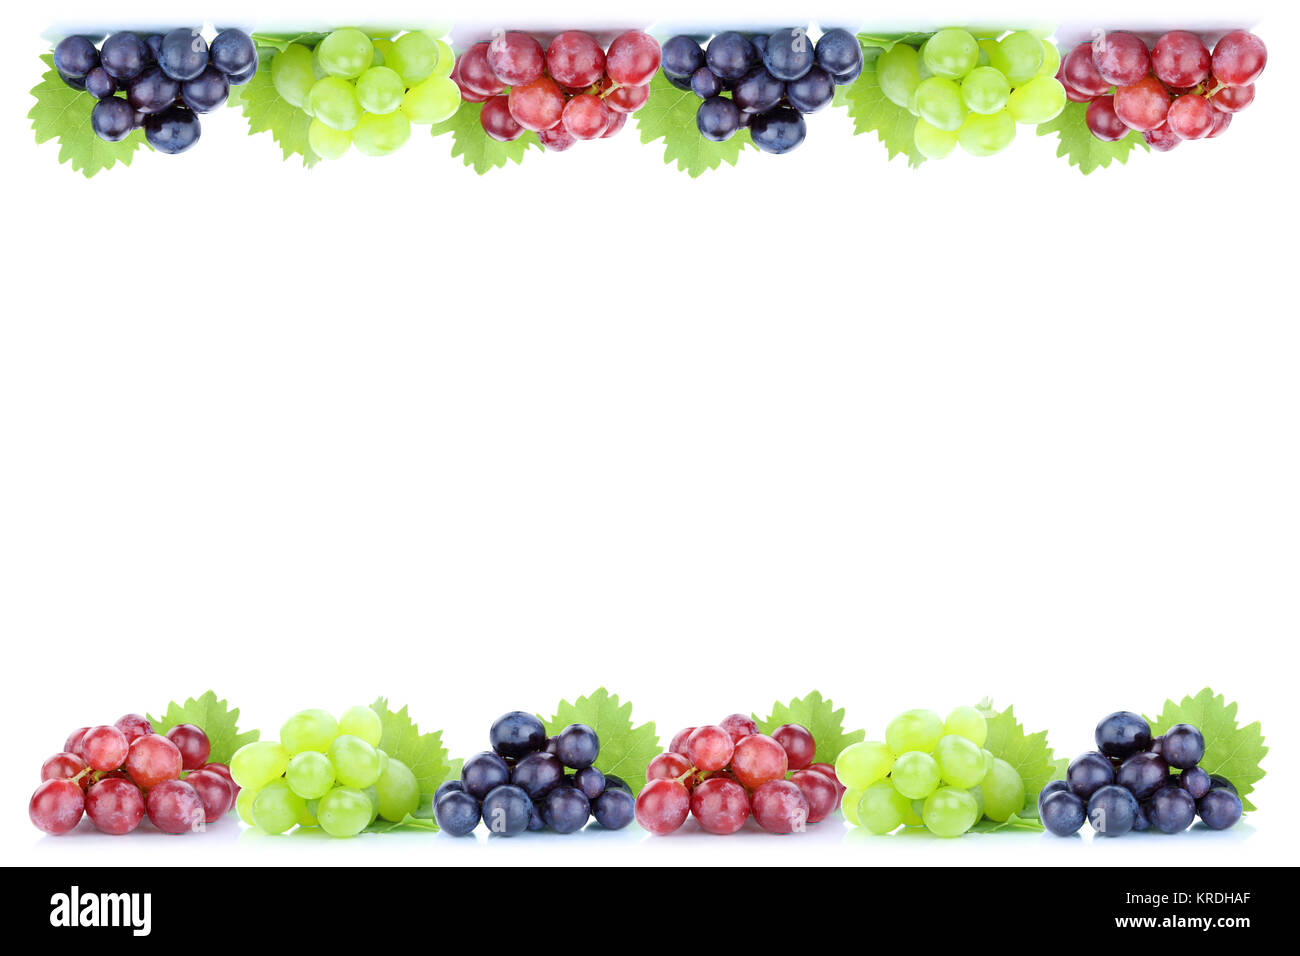 Trauben Weintrauben rot grün blau frische bio Früchte Herbst Obst Freisteller freigestellt isoliert vor einem weissen Hintergrund Textfreiraum Copyspace Stock Photo